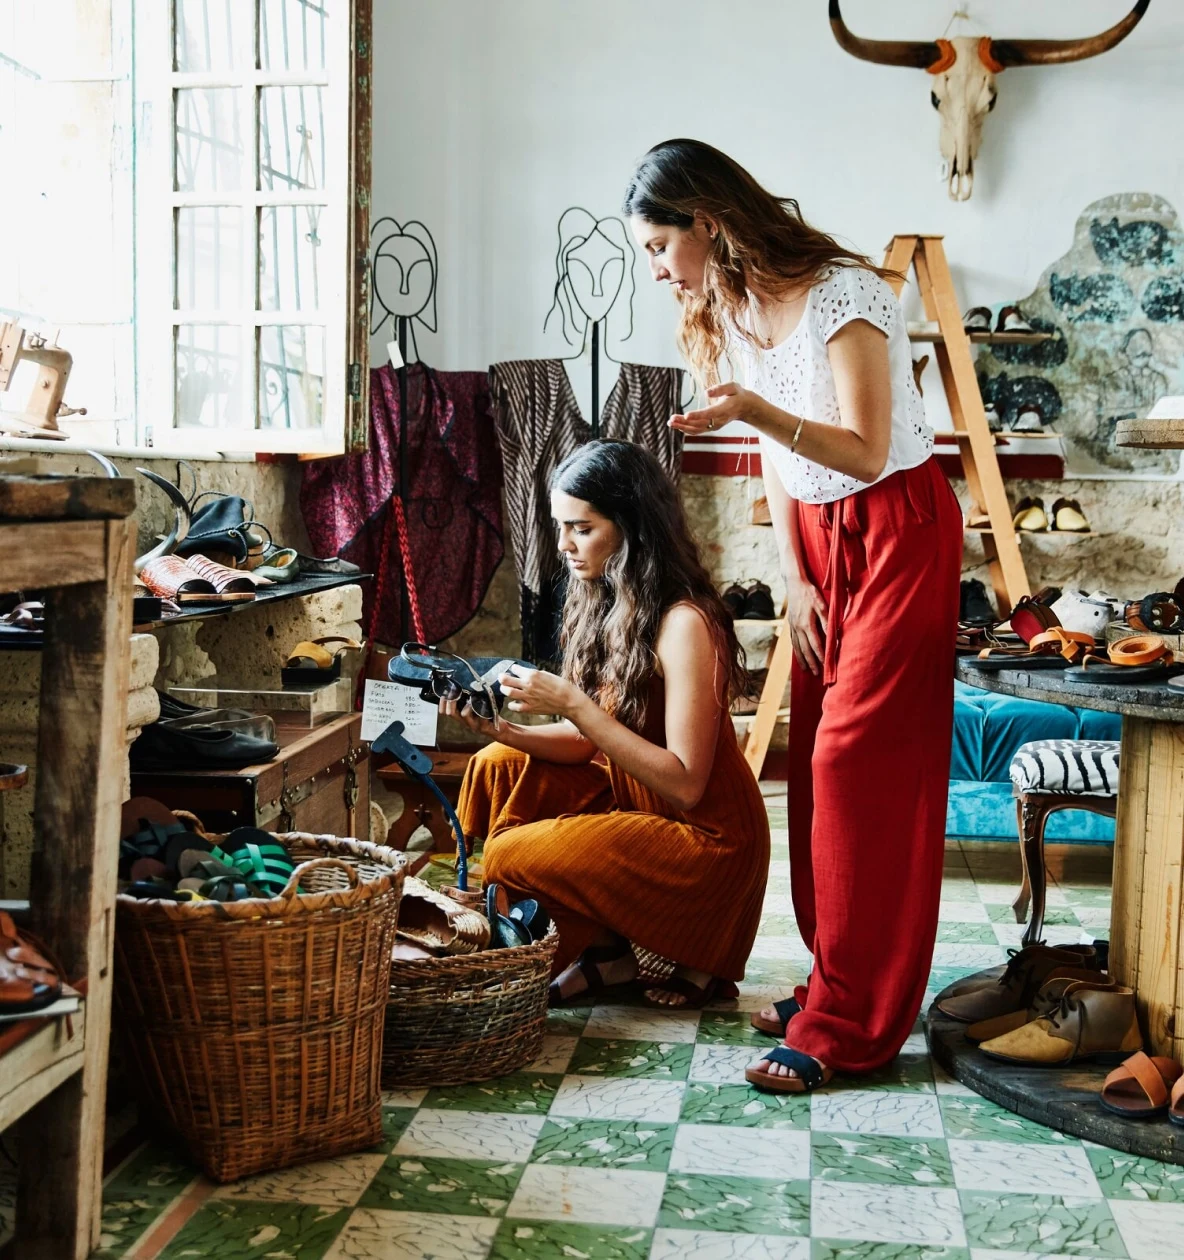 Două femei cu părul lung și închis la culoare se uită la o pereche de sandale într-un magazin de îmbrăcăminte